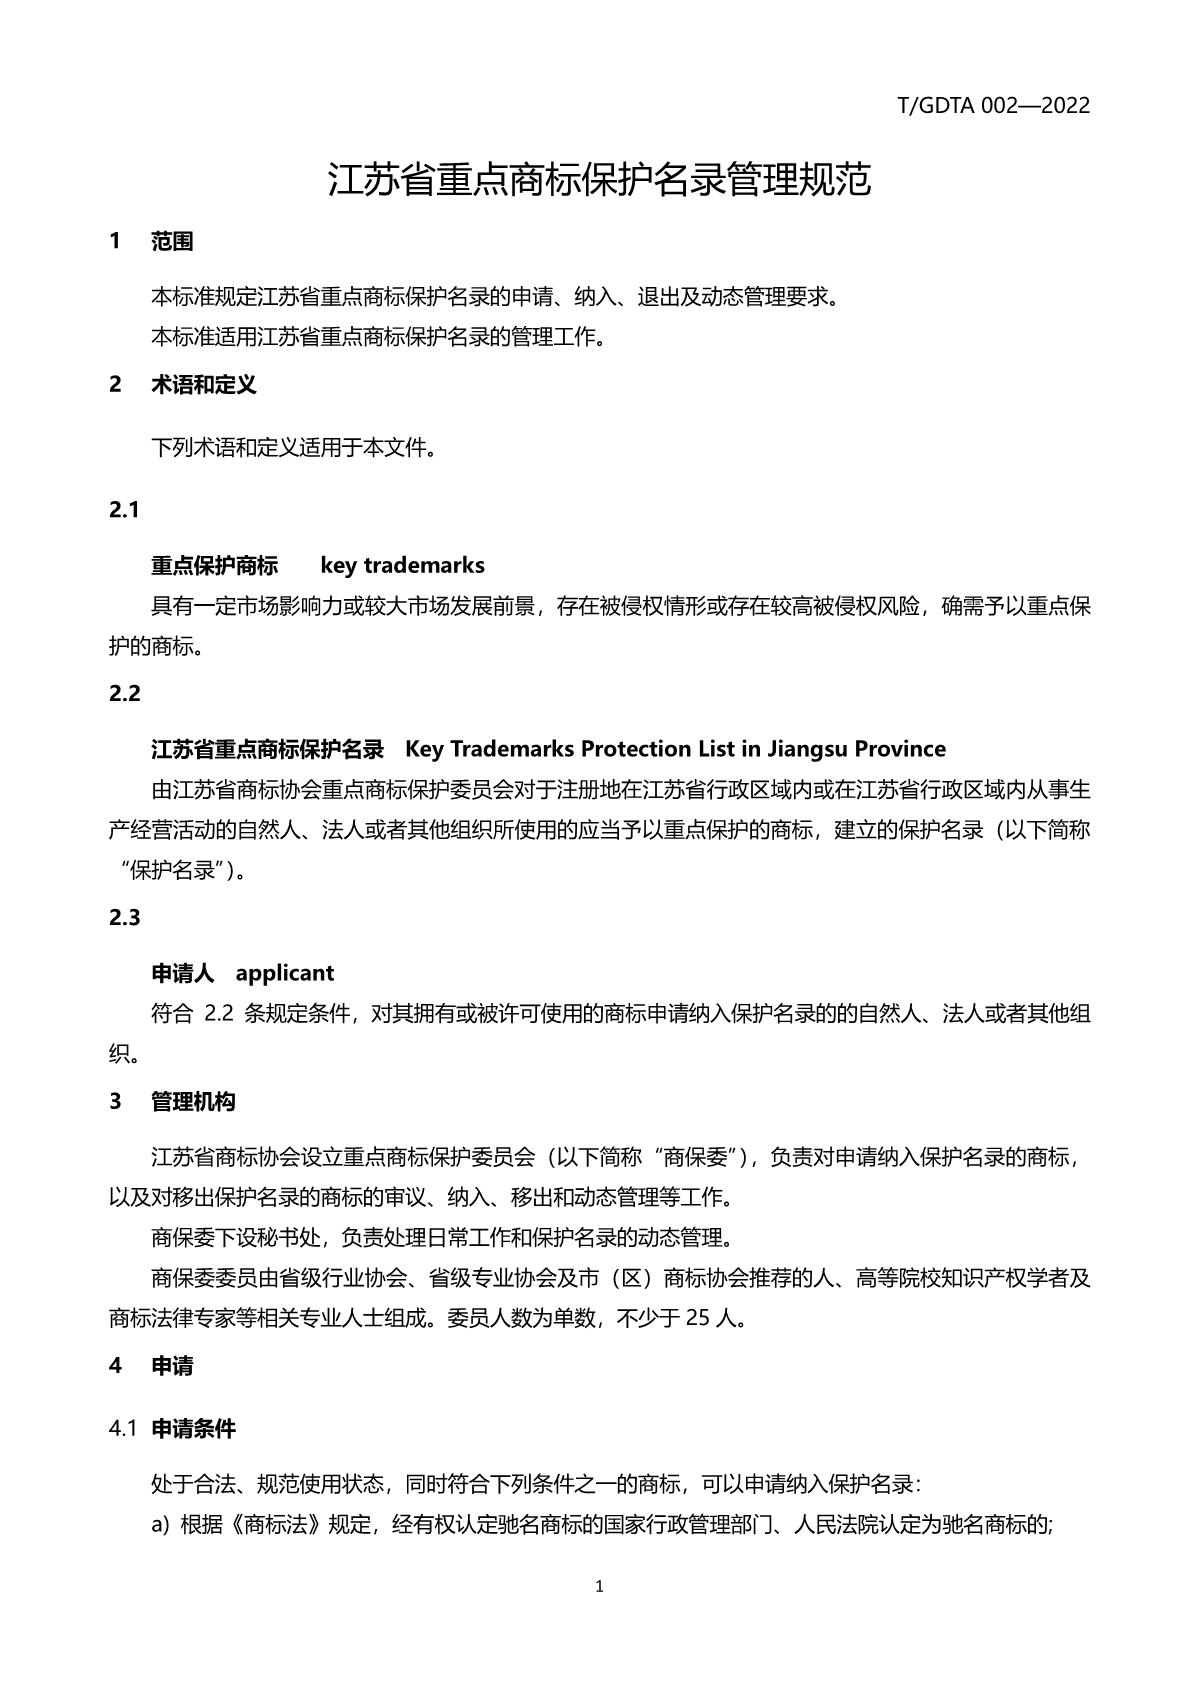 江苏省重点商标保护名录管理规范（征求意见稿）_4.JPG